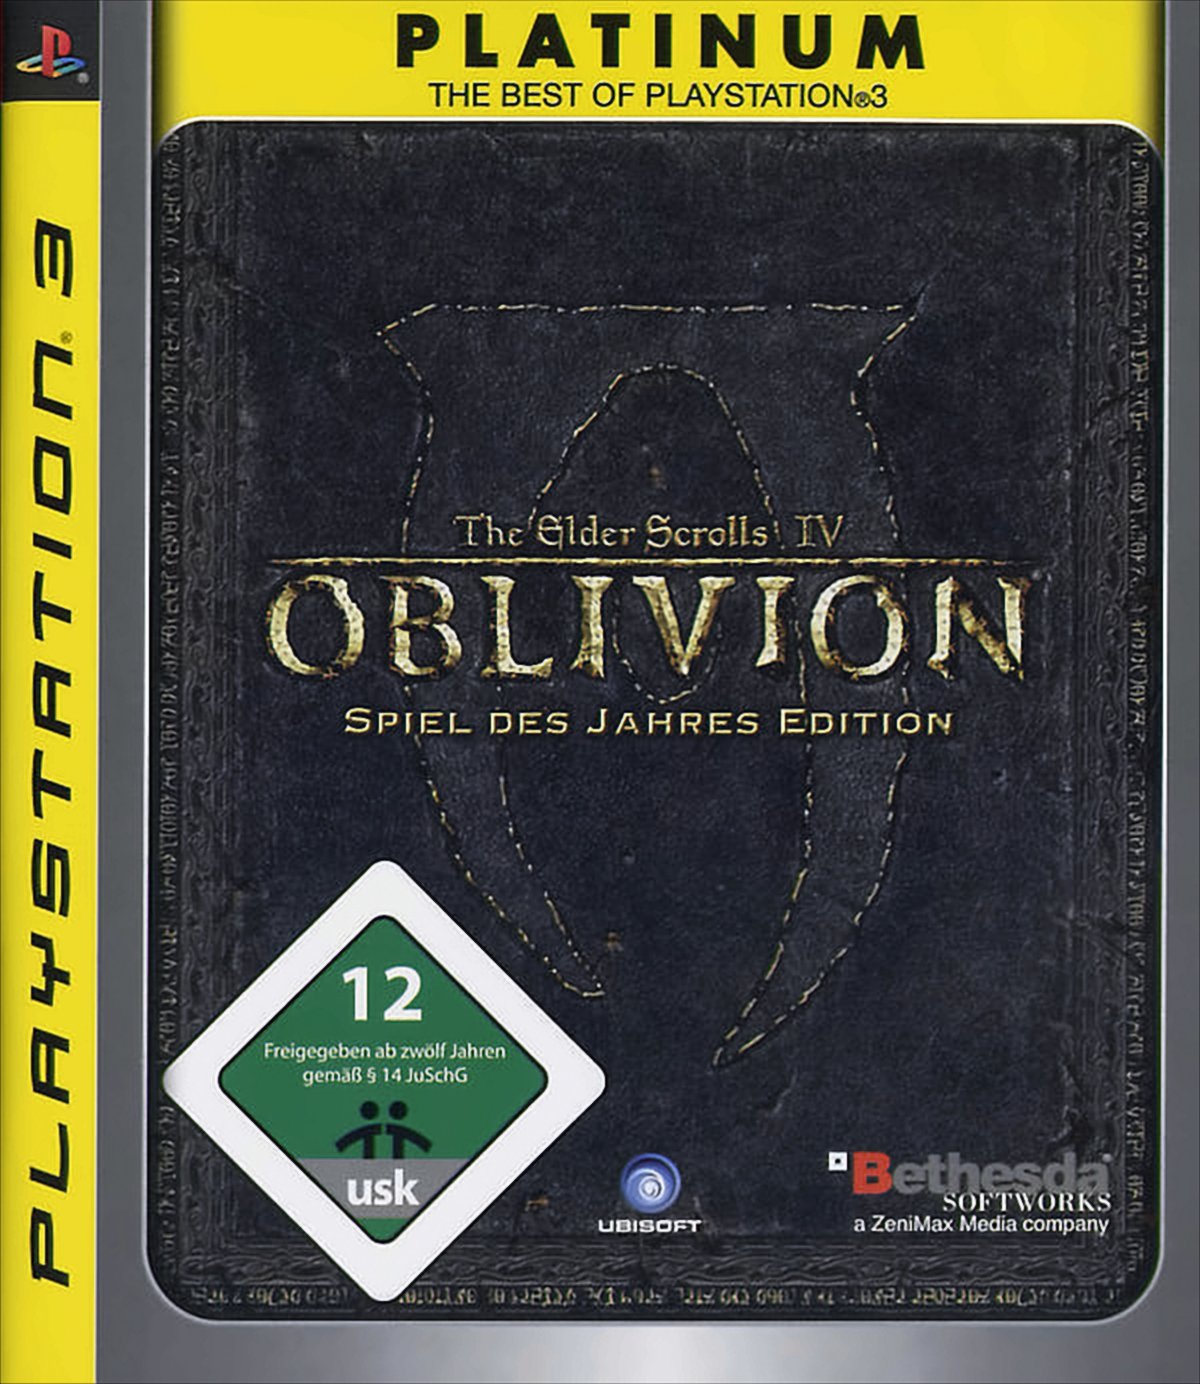 The Elder Scrolls IV - Oblivion (Spiel des Jahres Edition) von Bethesda Softworks (ZeniMax)